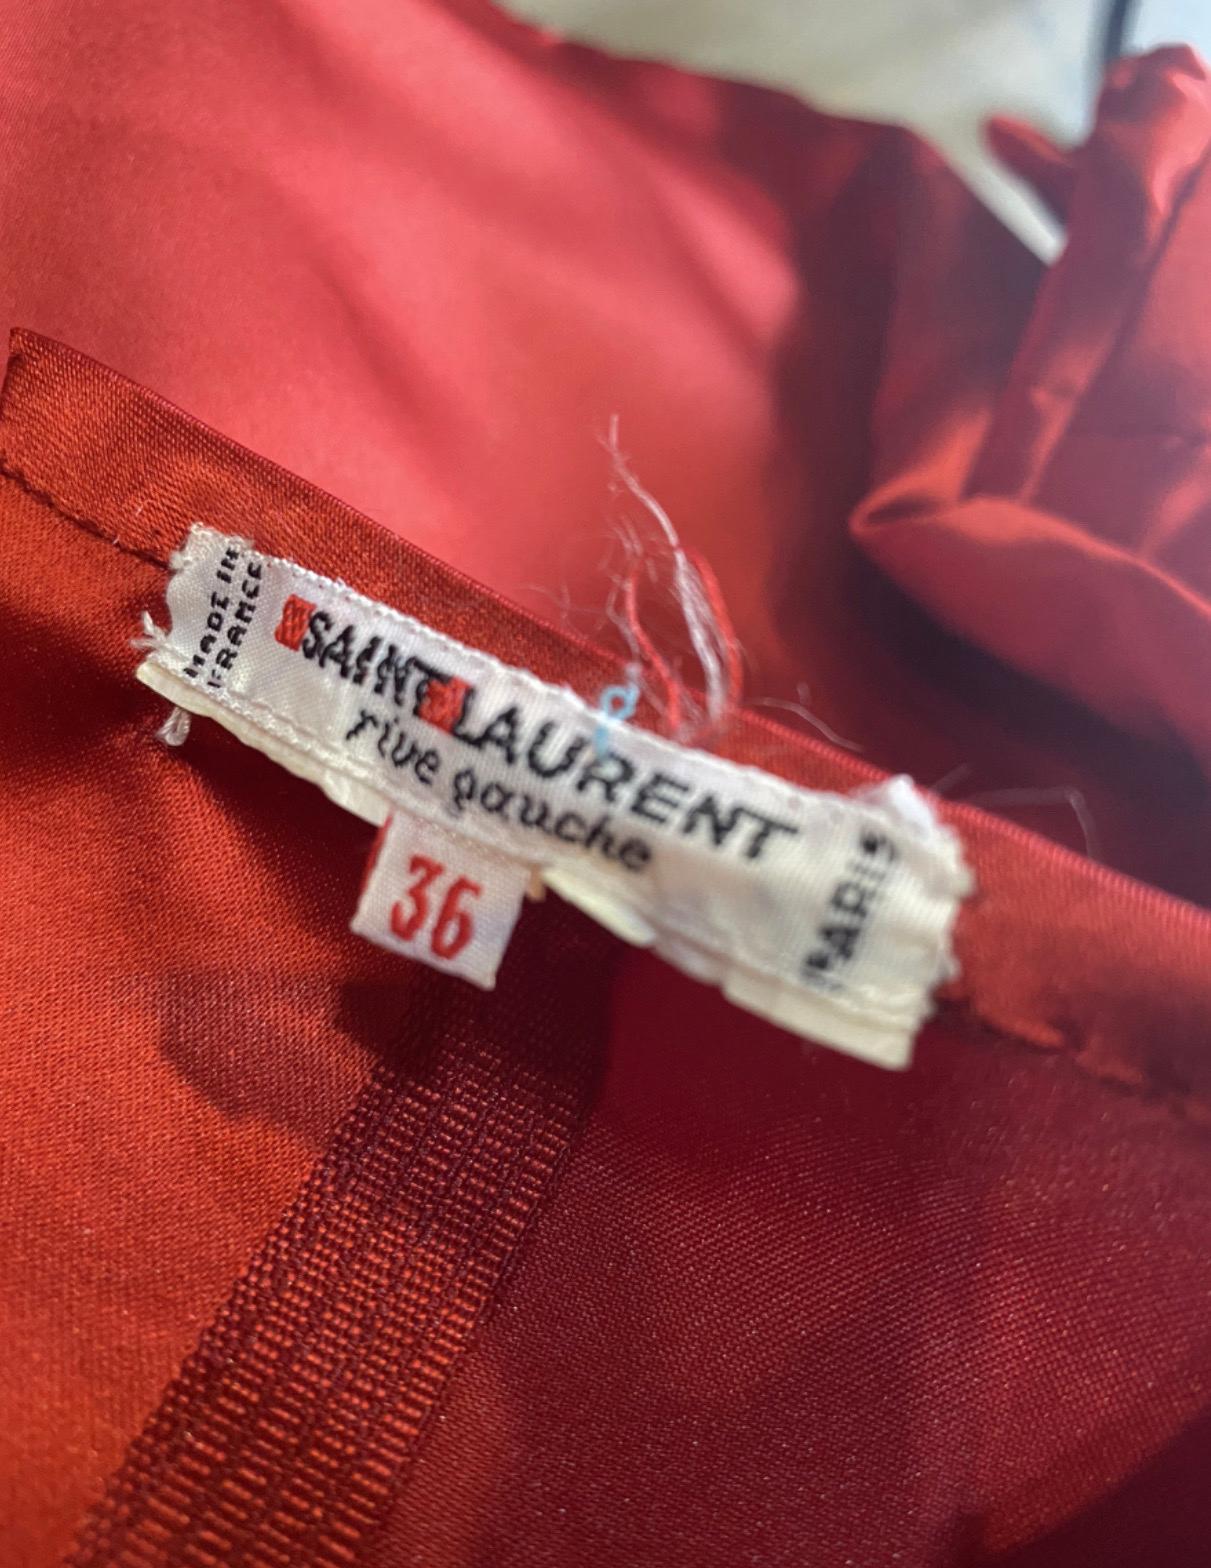 Yves Saint Laurent Kleid in intensiv rot Seidensatin, Französisch Größe 36, Ballonärmel mit bestickt. der einzige Mangel ist ein kleiner Knopf auf der Rückseite, die gebrochen ist, Messungen: Schulter 37cm Ärmel 30cm Brust 42cm Taille 35cm Länge